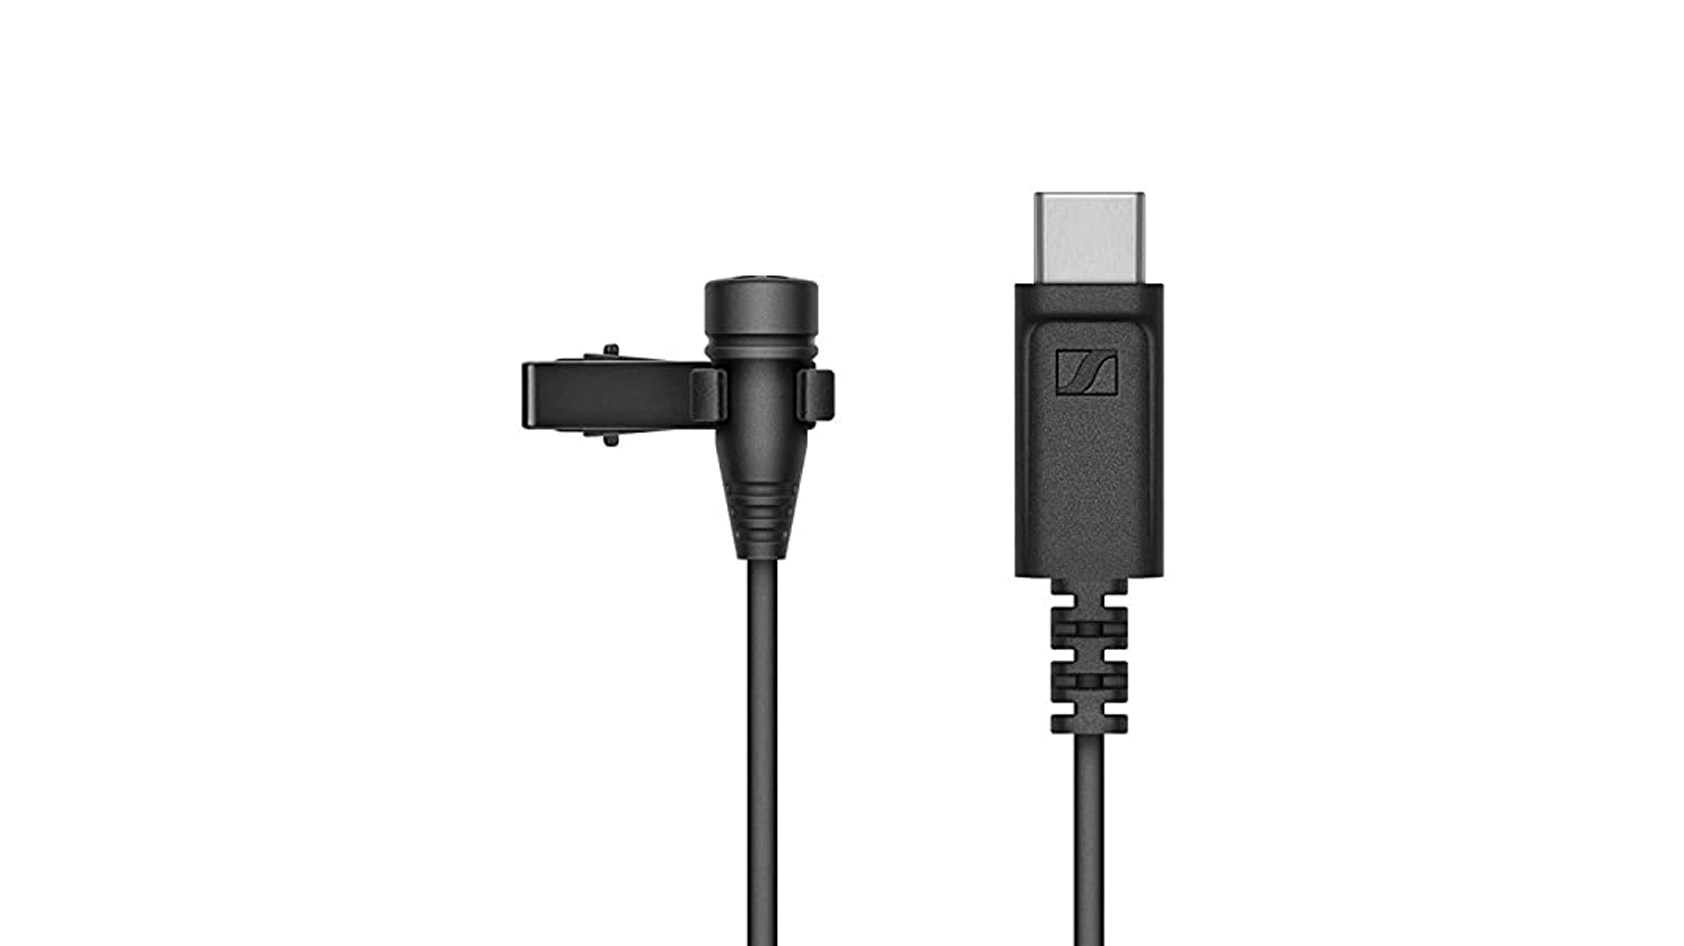 The Sennheiser XS Lav USB-C in black against a white background.